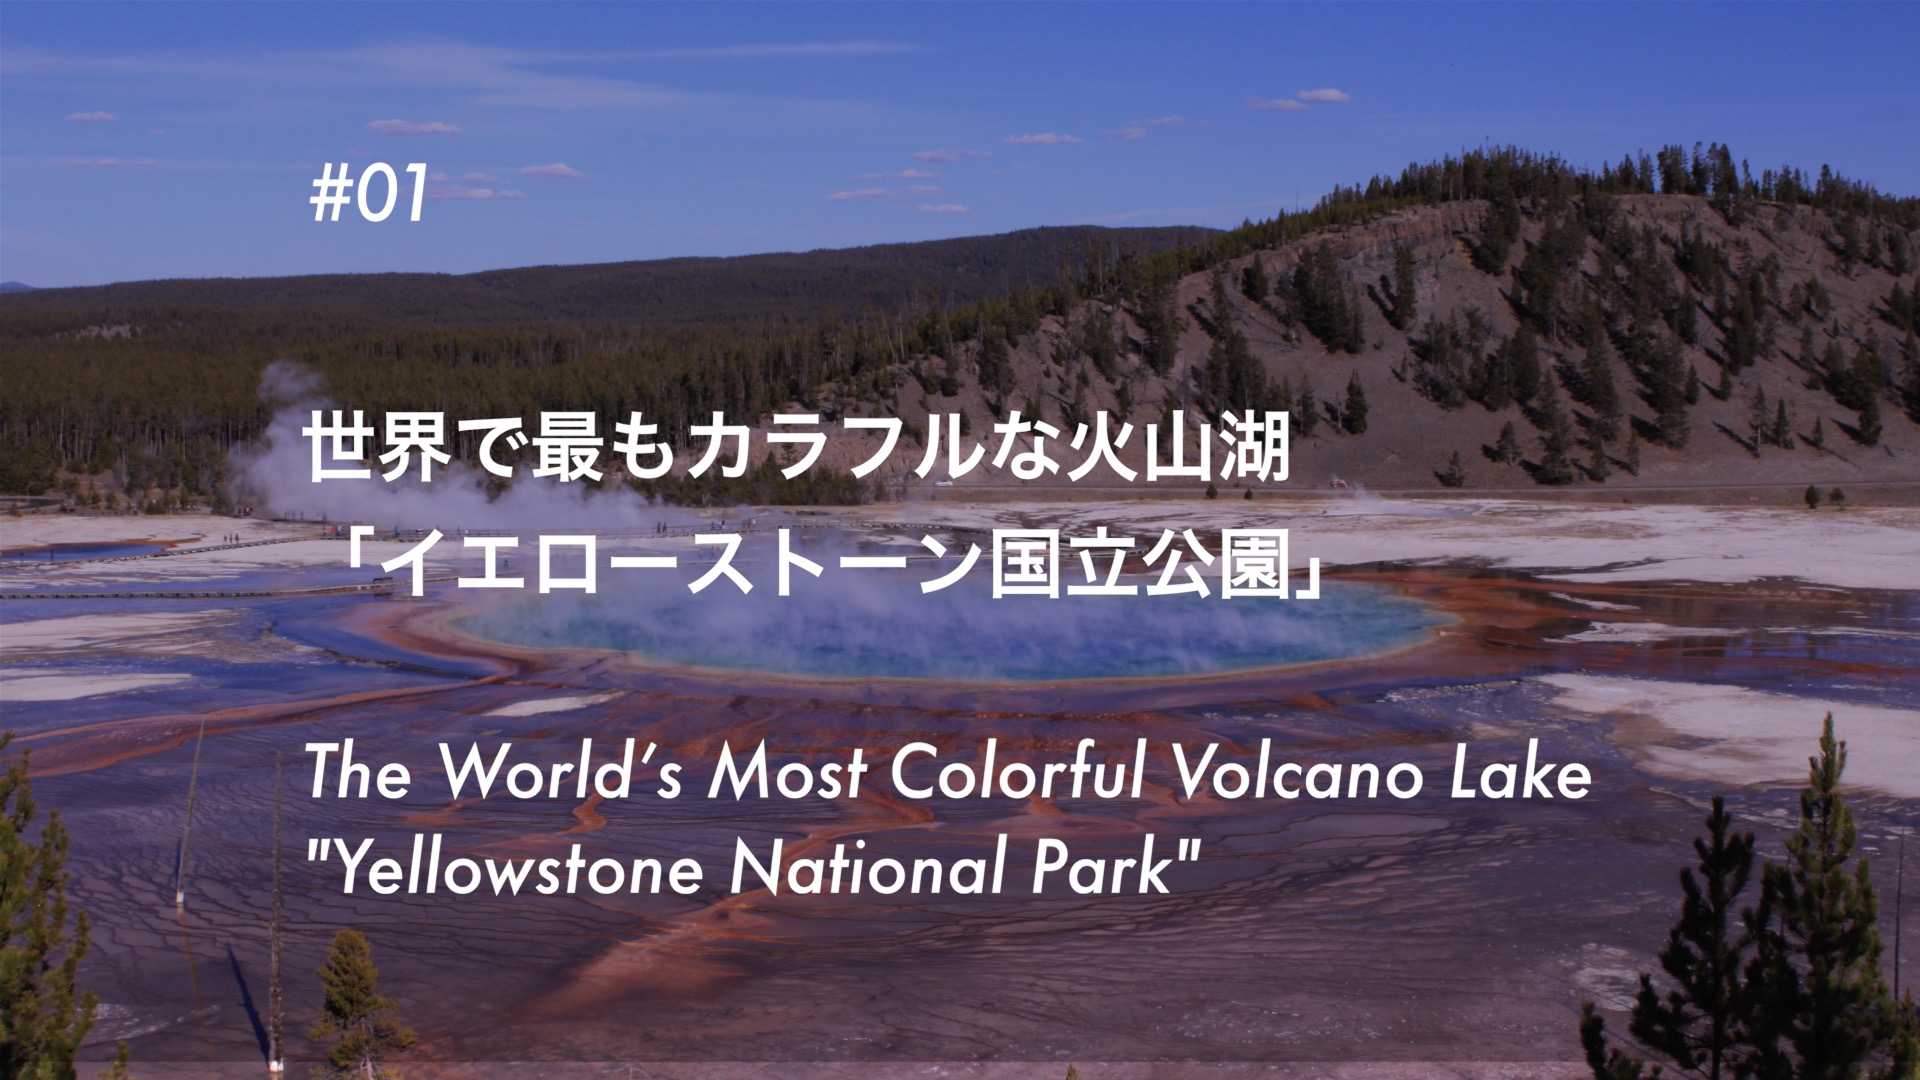 #01 世界で最もカラフルな火山湖 「イエローストーン国立公園」- The World’s Most Colorful Volcano Lake “Yellowstone National Park”